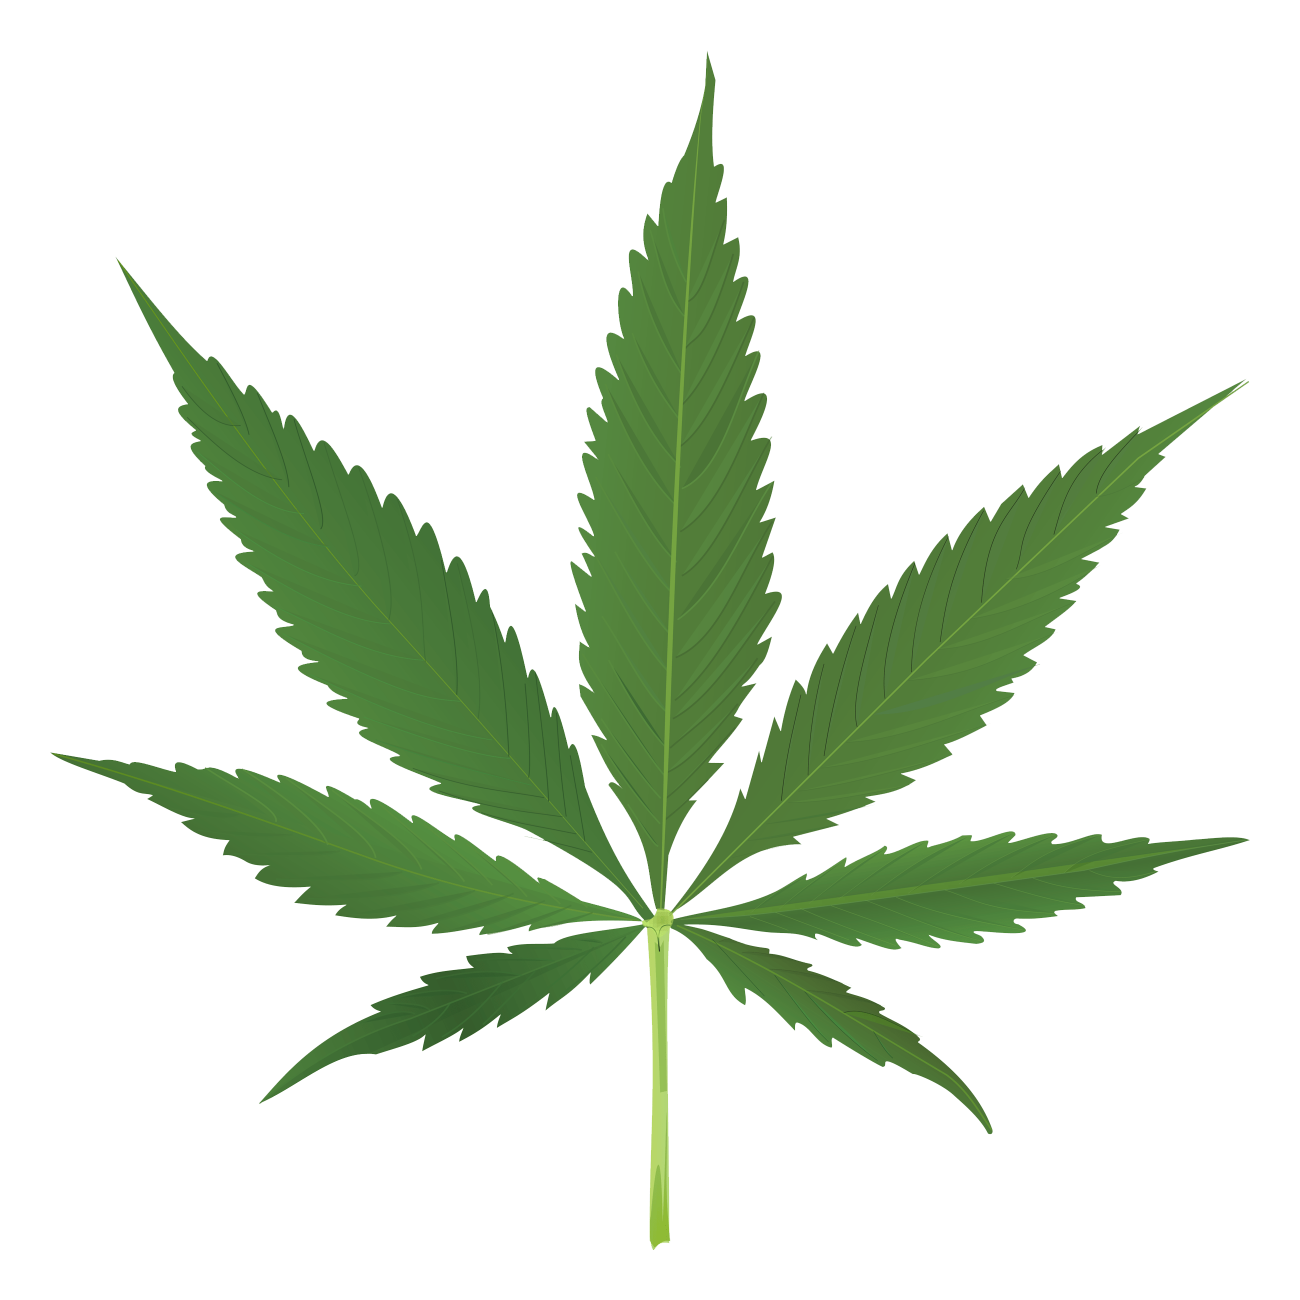 Marijuana Leaf Blank Meme Template